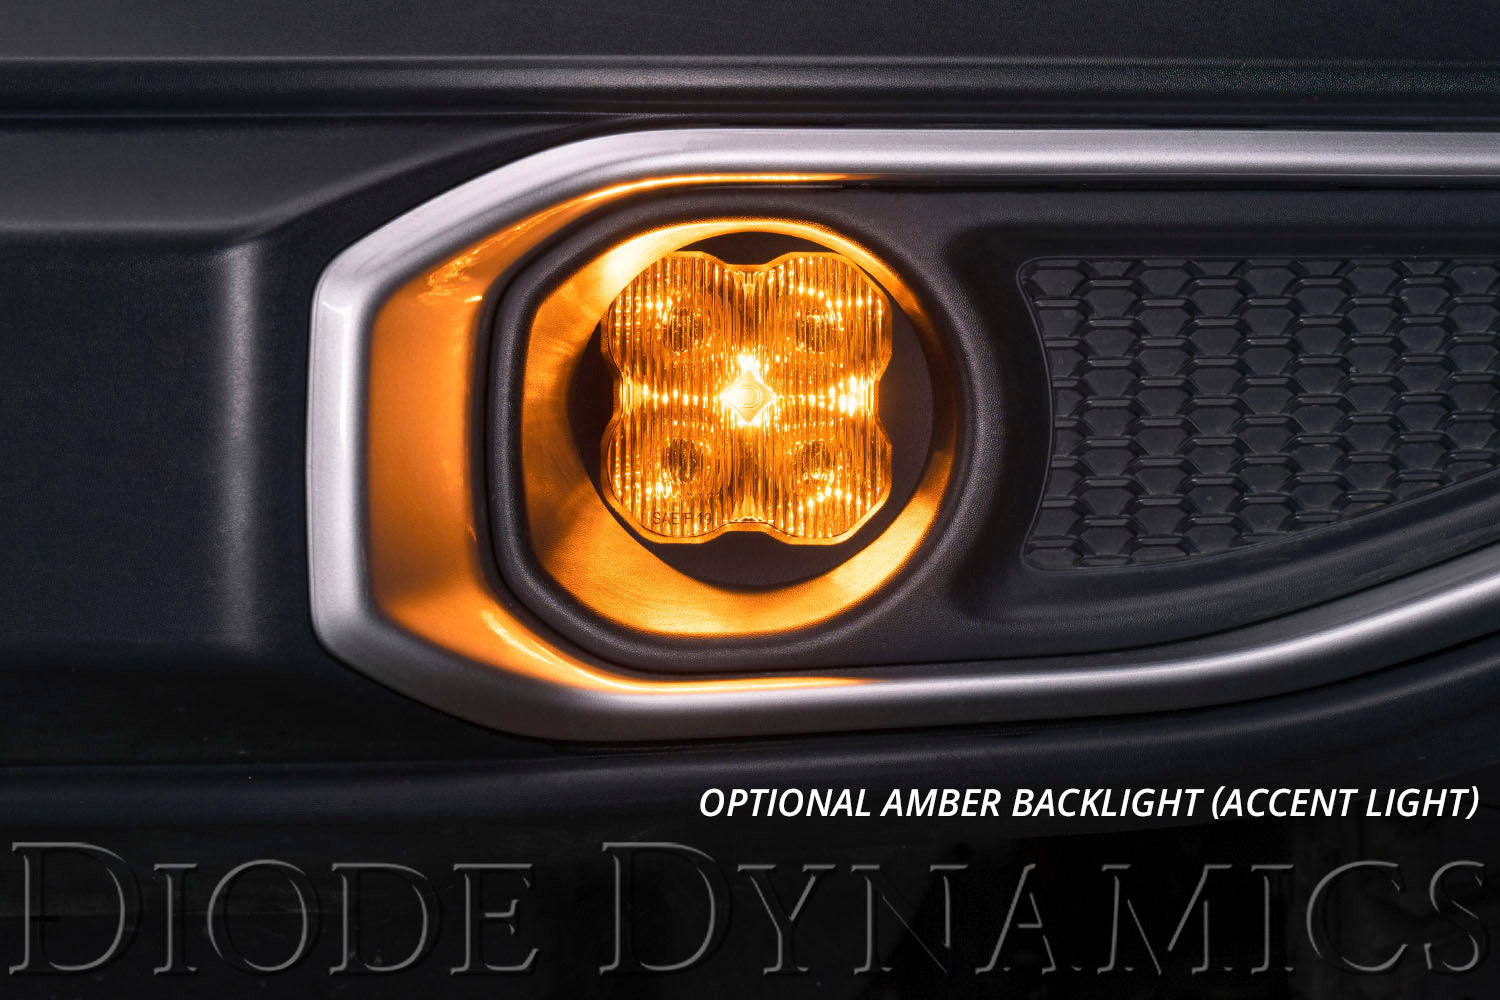 SS3 LED Fog Light Kit for 2007-2014 Chevrolet Tahoe White SAE Fog Pro Diode Dynamics